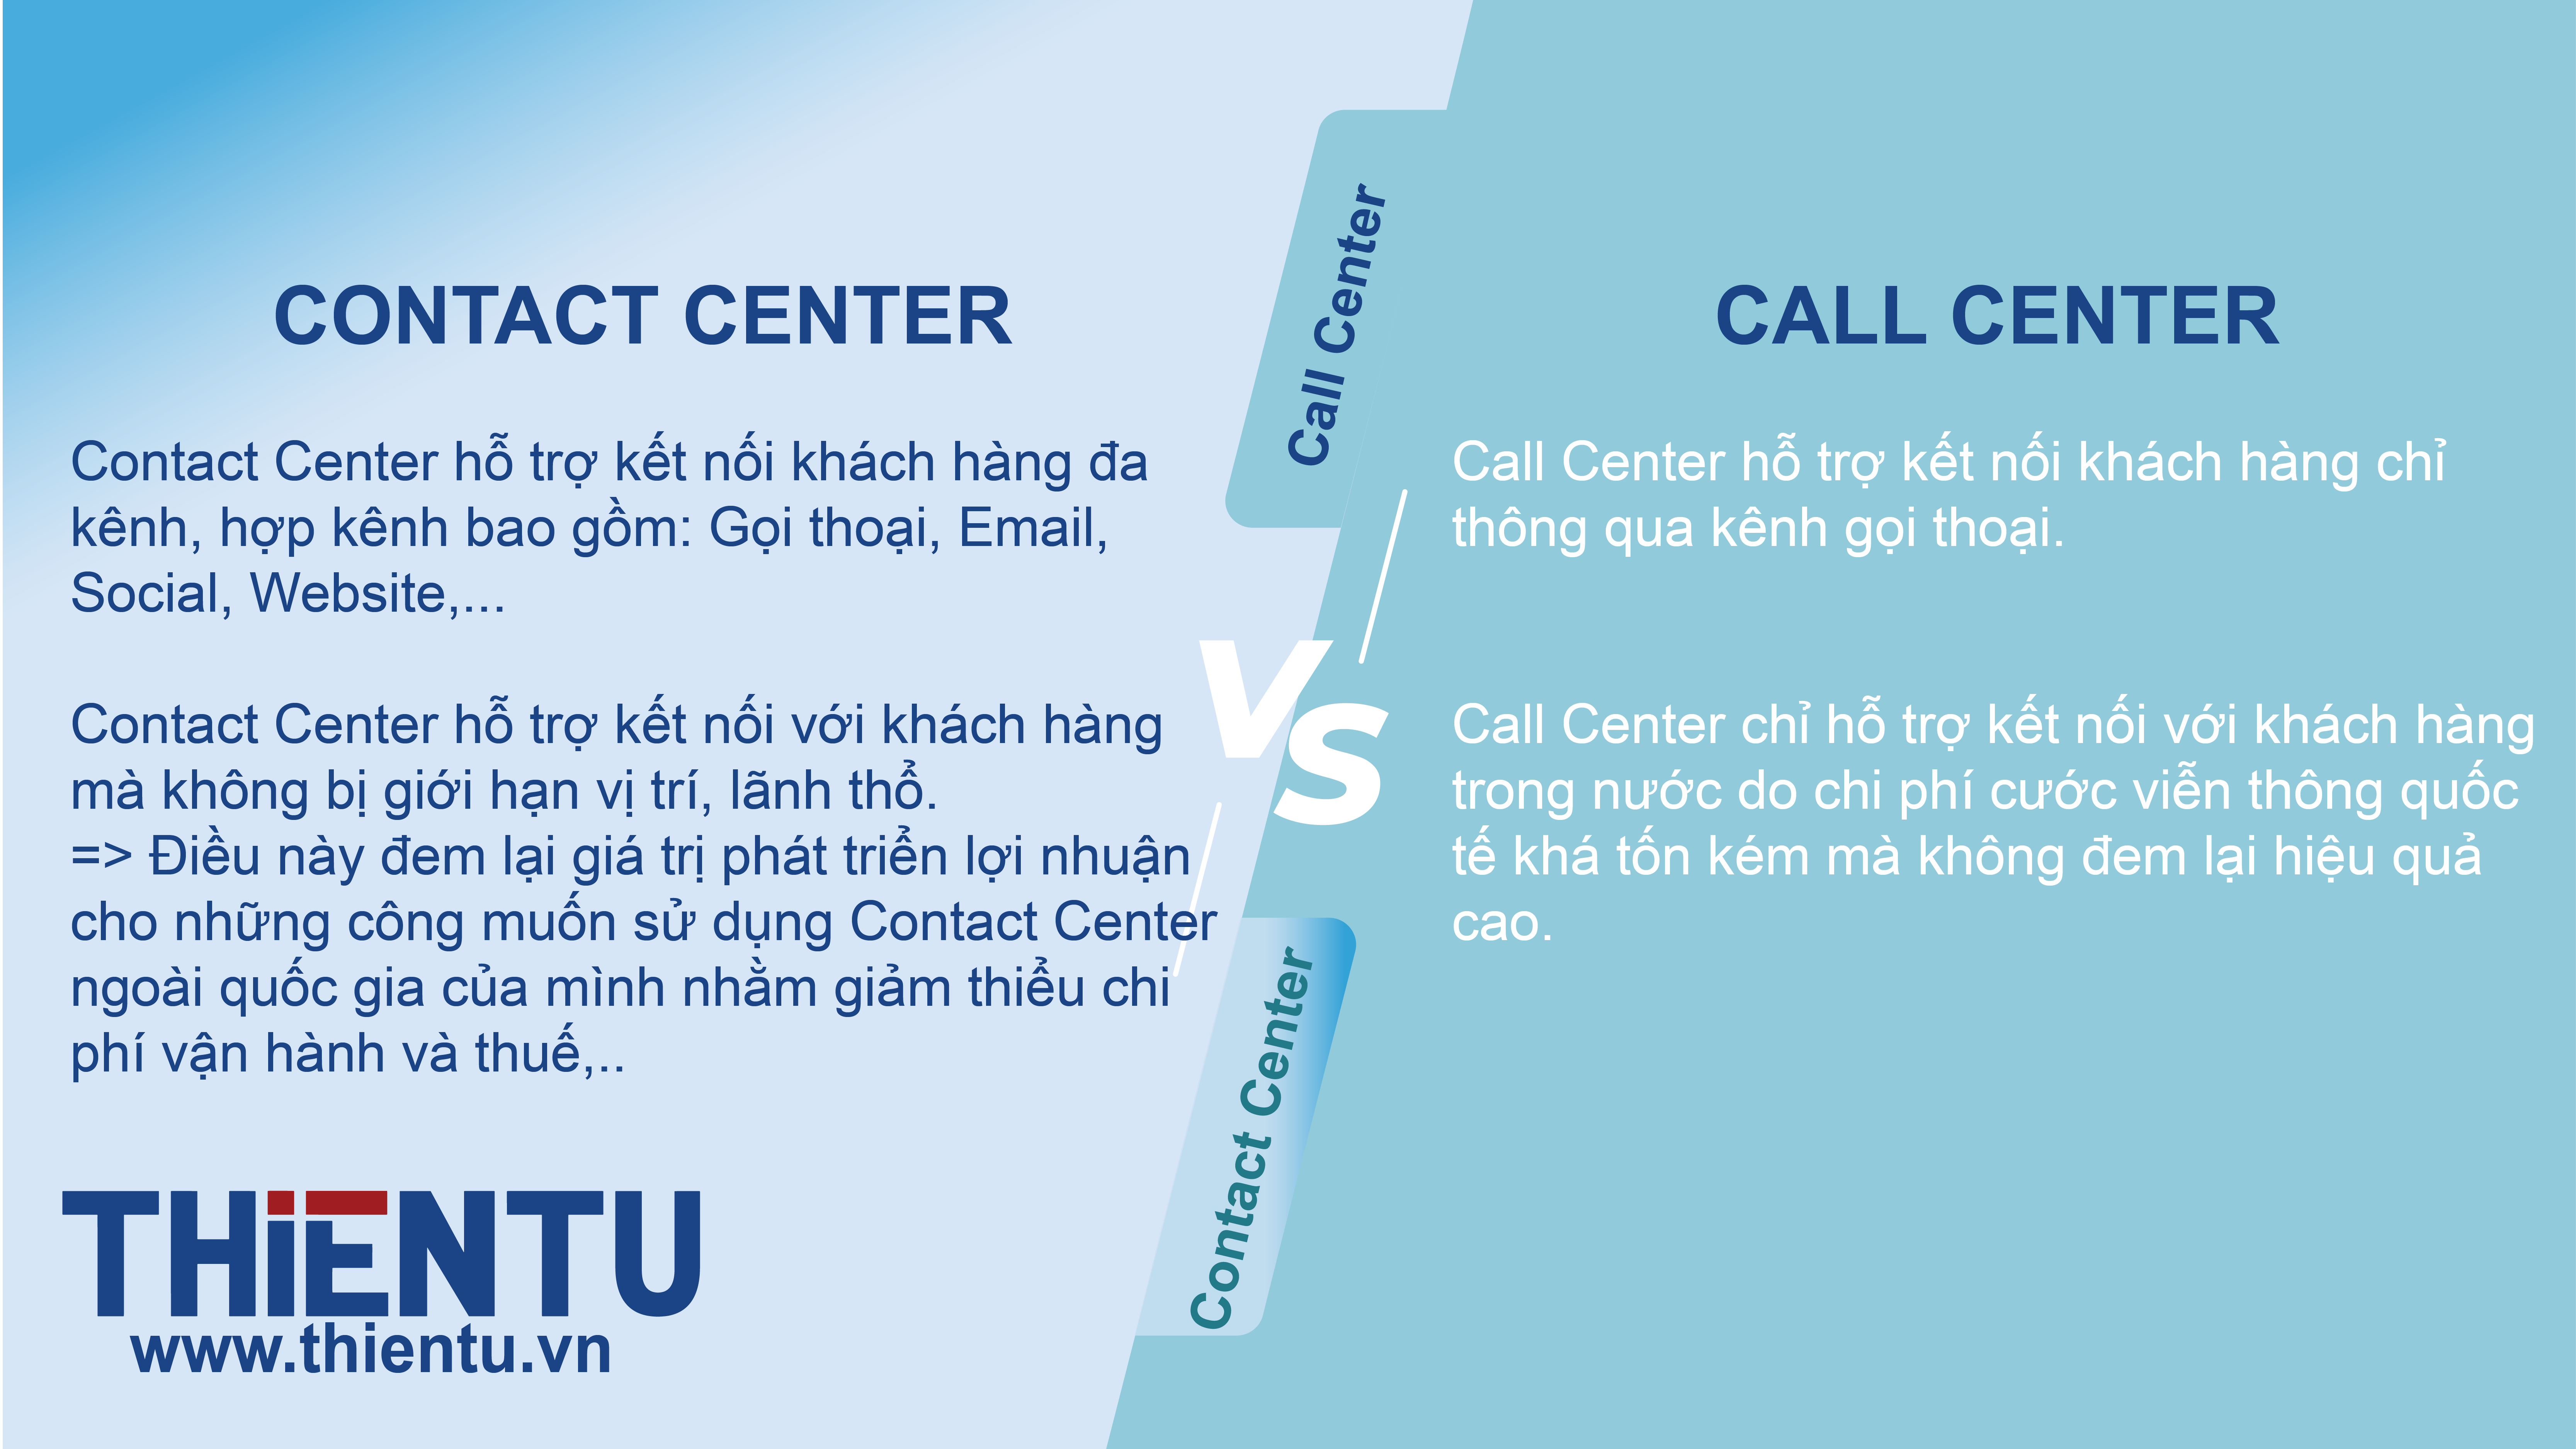 Điểm Khác Biệt Giữa Contact Center Và Call Center Là Gì?